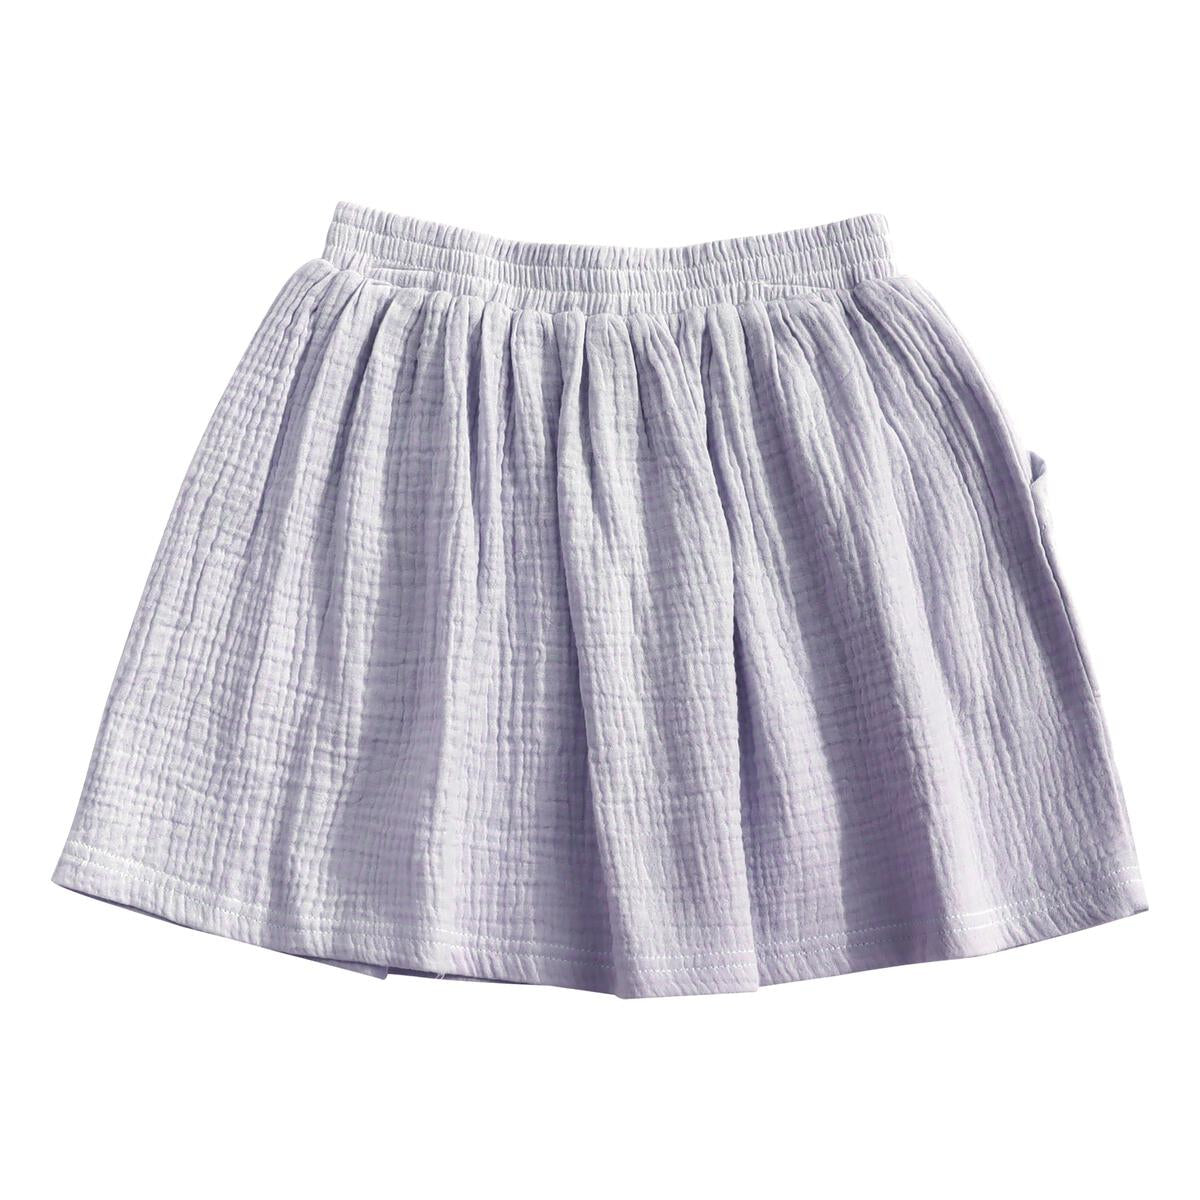 Woven Pocket Skirt